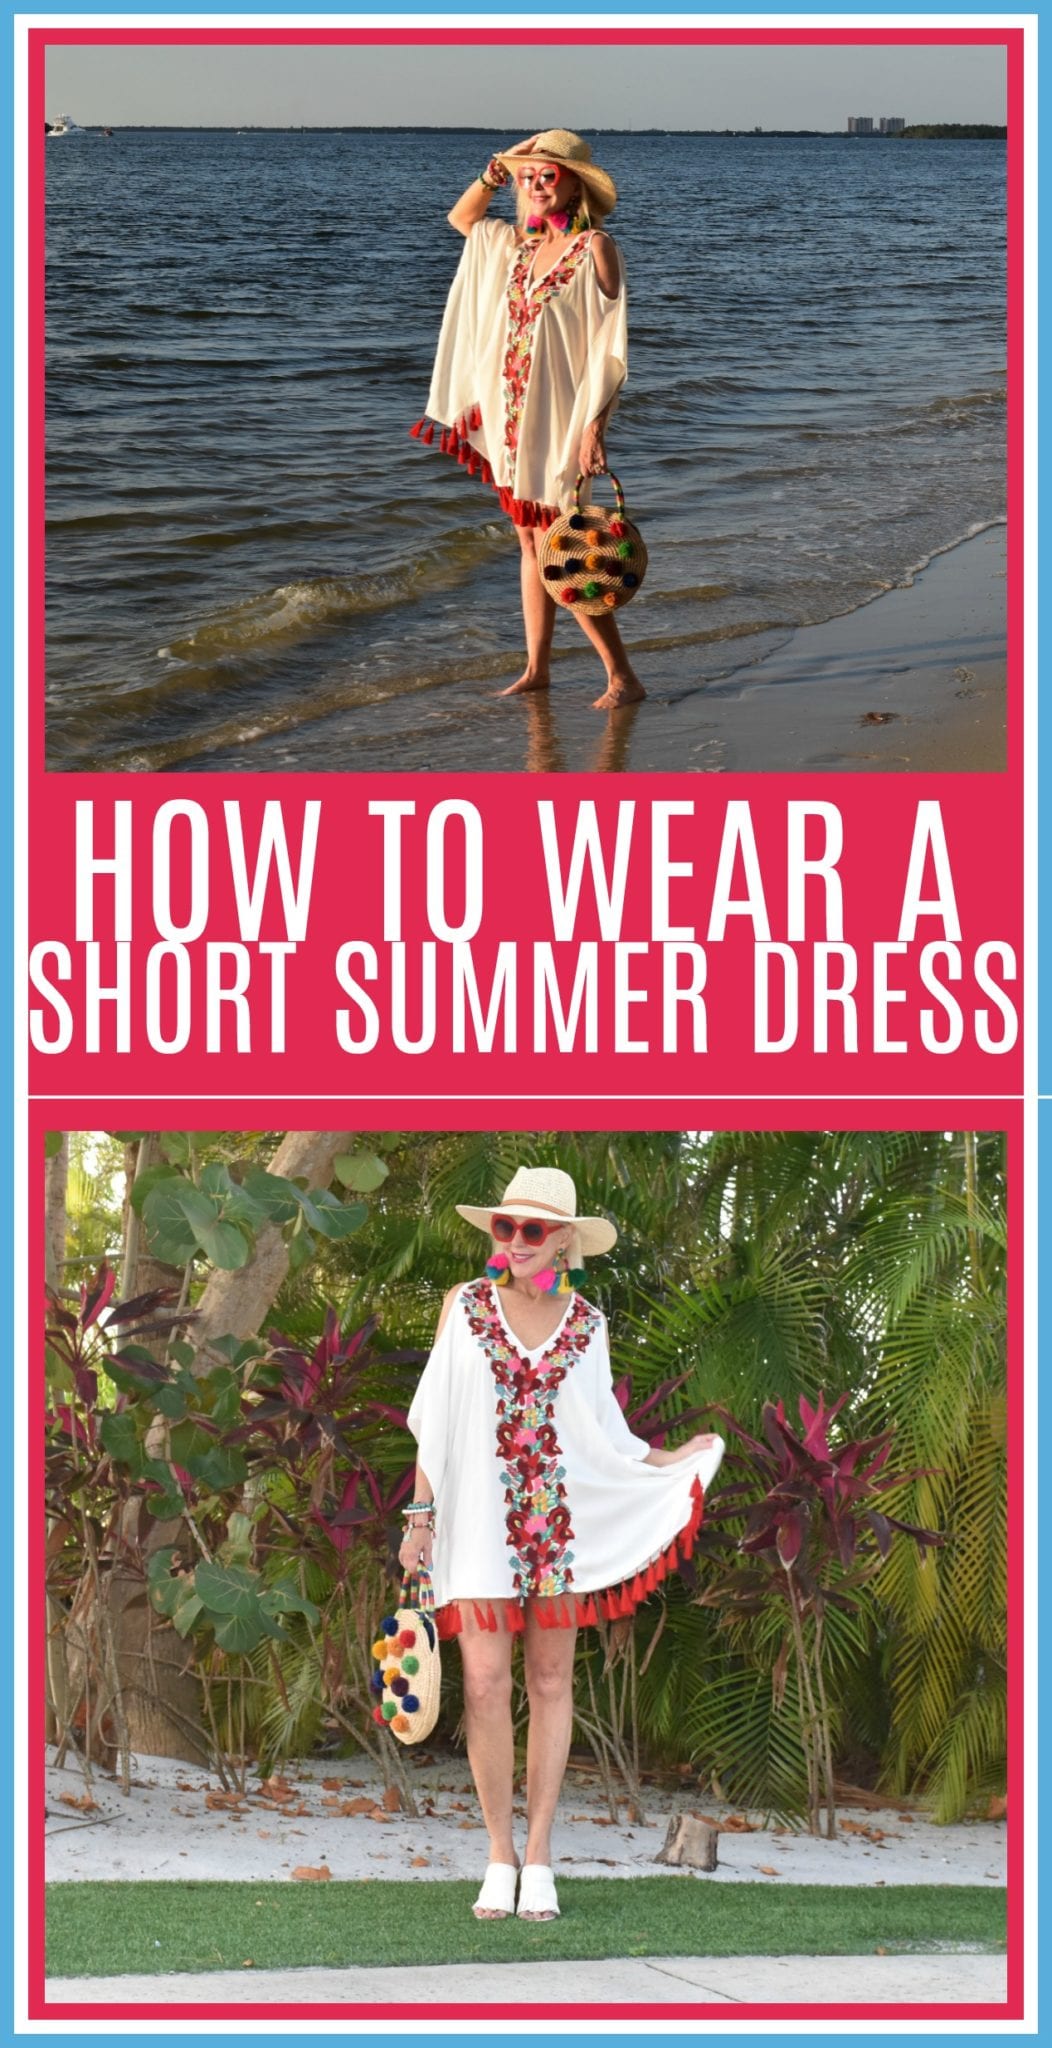 short summer dresses, sundresses, how to wear short dresses